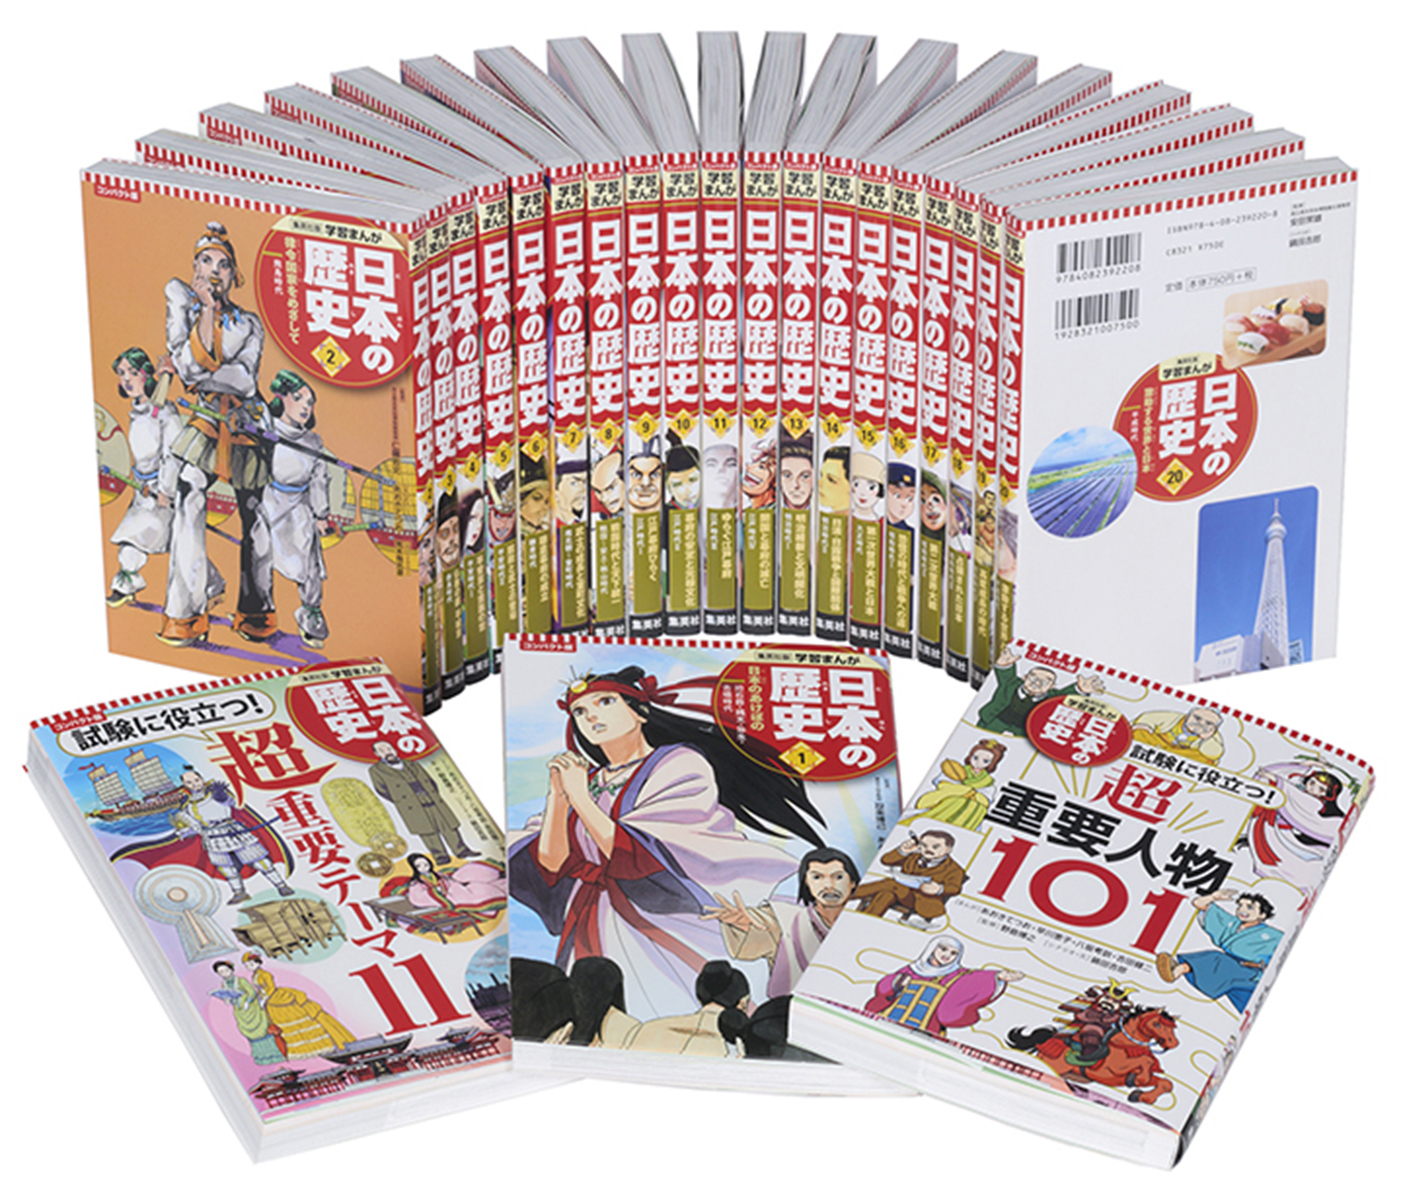 集英社 コンパクト版 学習まんが 日本の歴史 全巻セット(全20巻+別巻2 